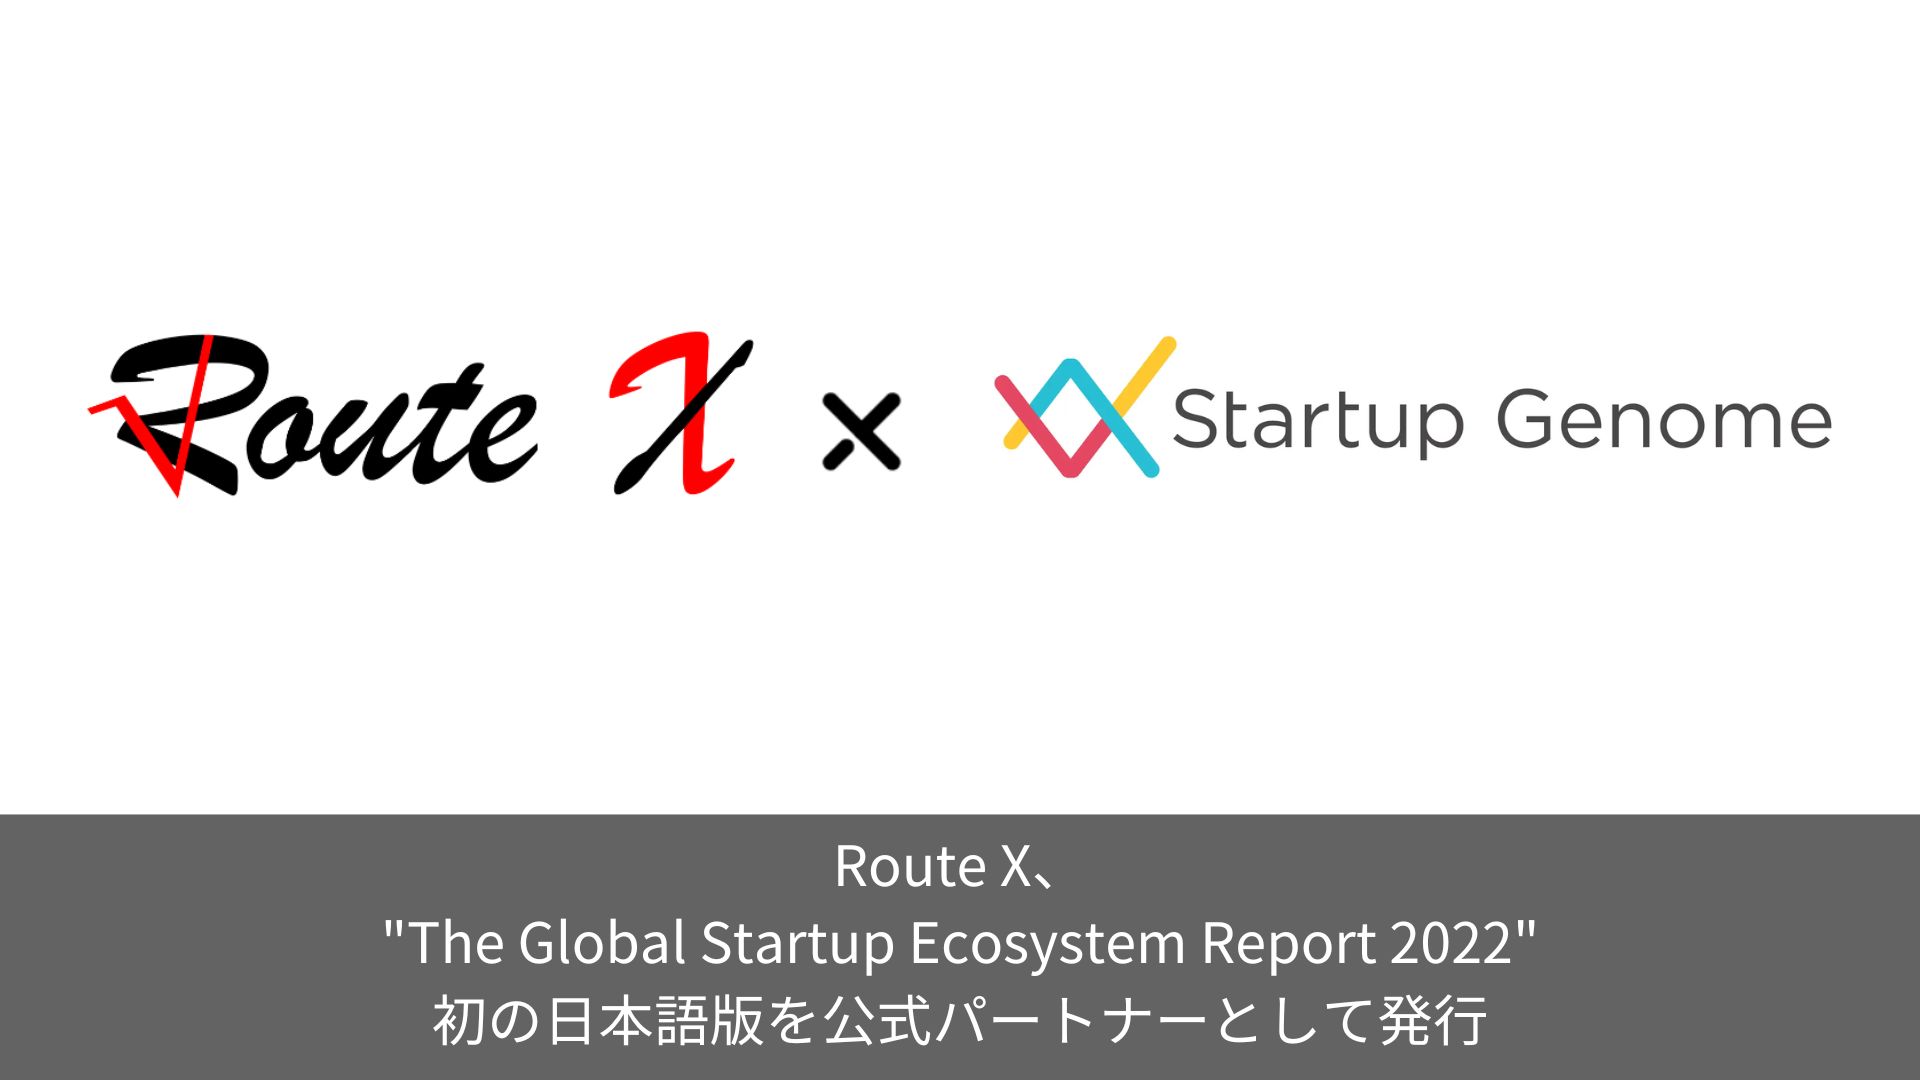 スタートアップ・エコシステム分析において世界最大規模の年次レポート “The Global Startup Ecosystem Report 2022” 初の日本語版を公式パートナーとして発行しました